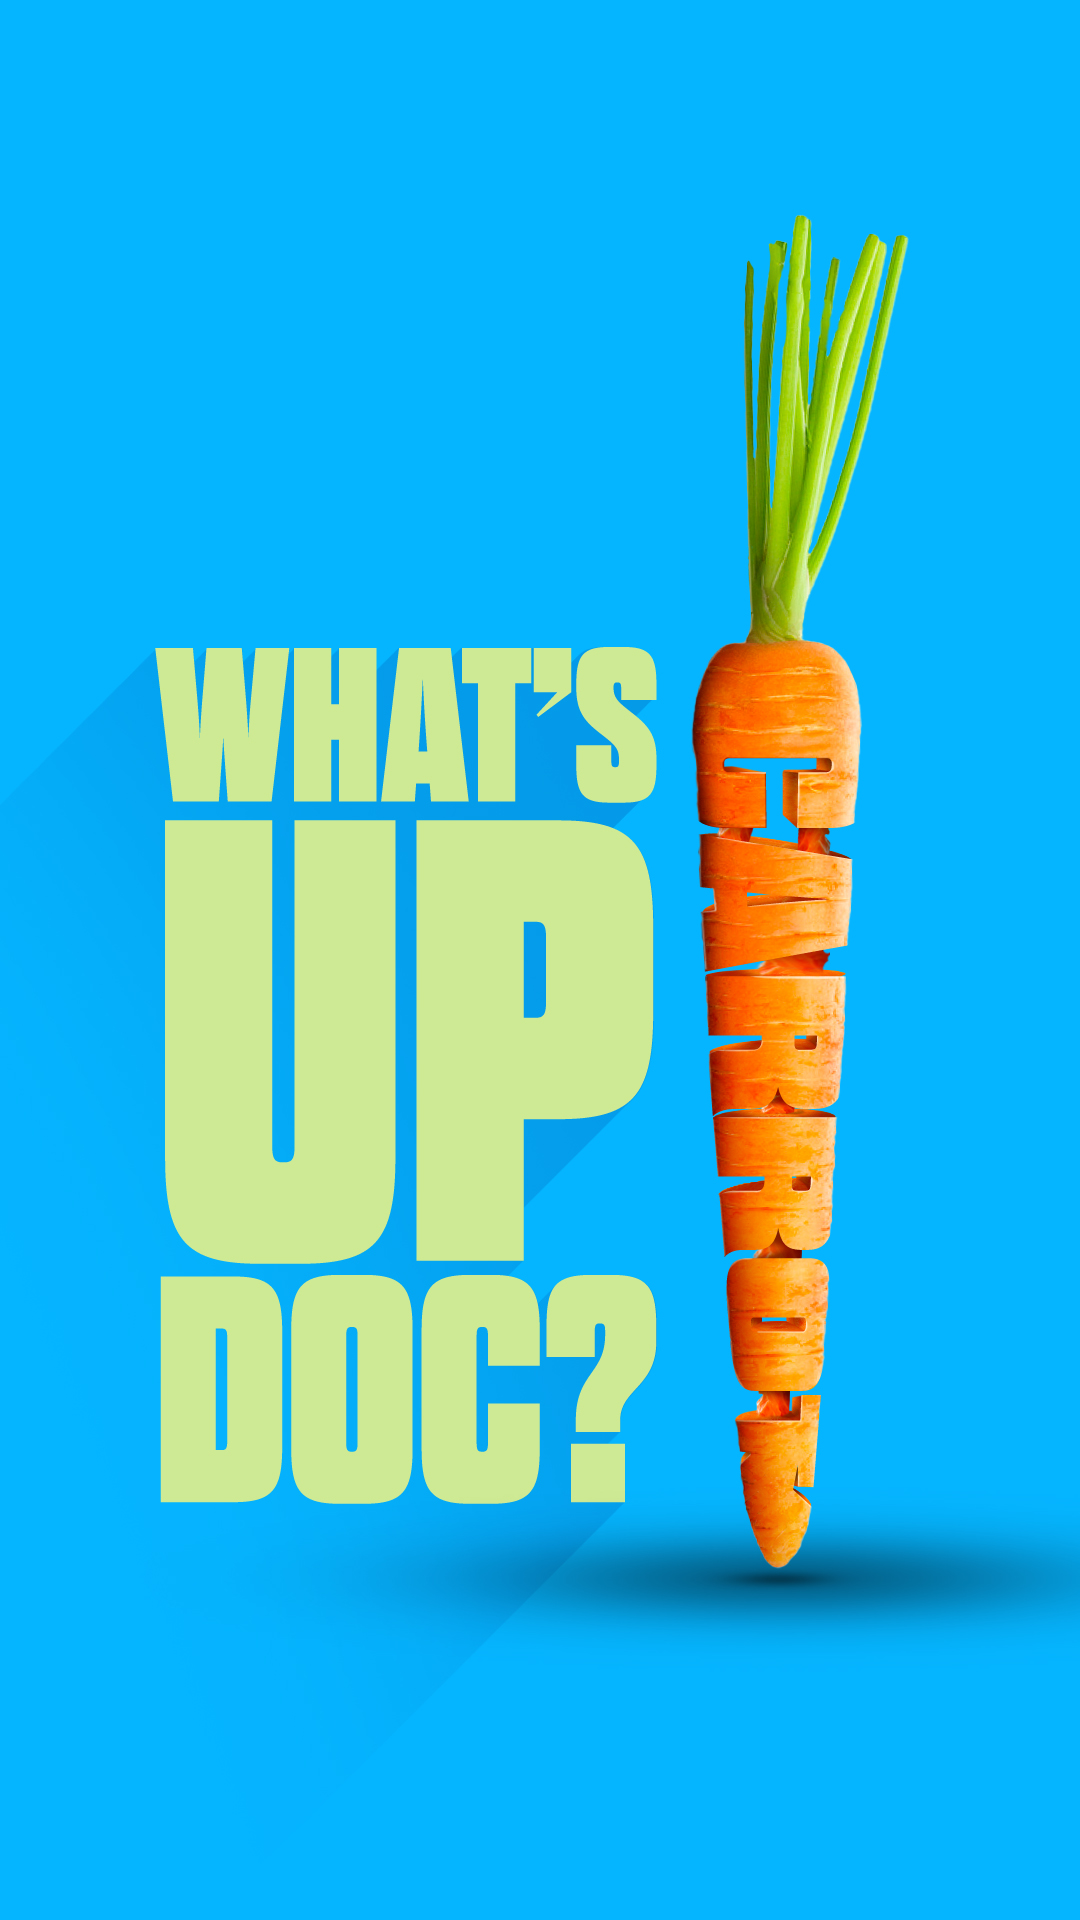 Carrot Poster